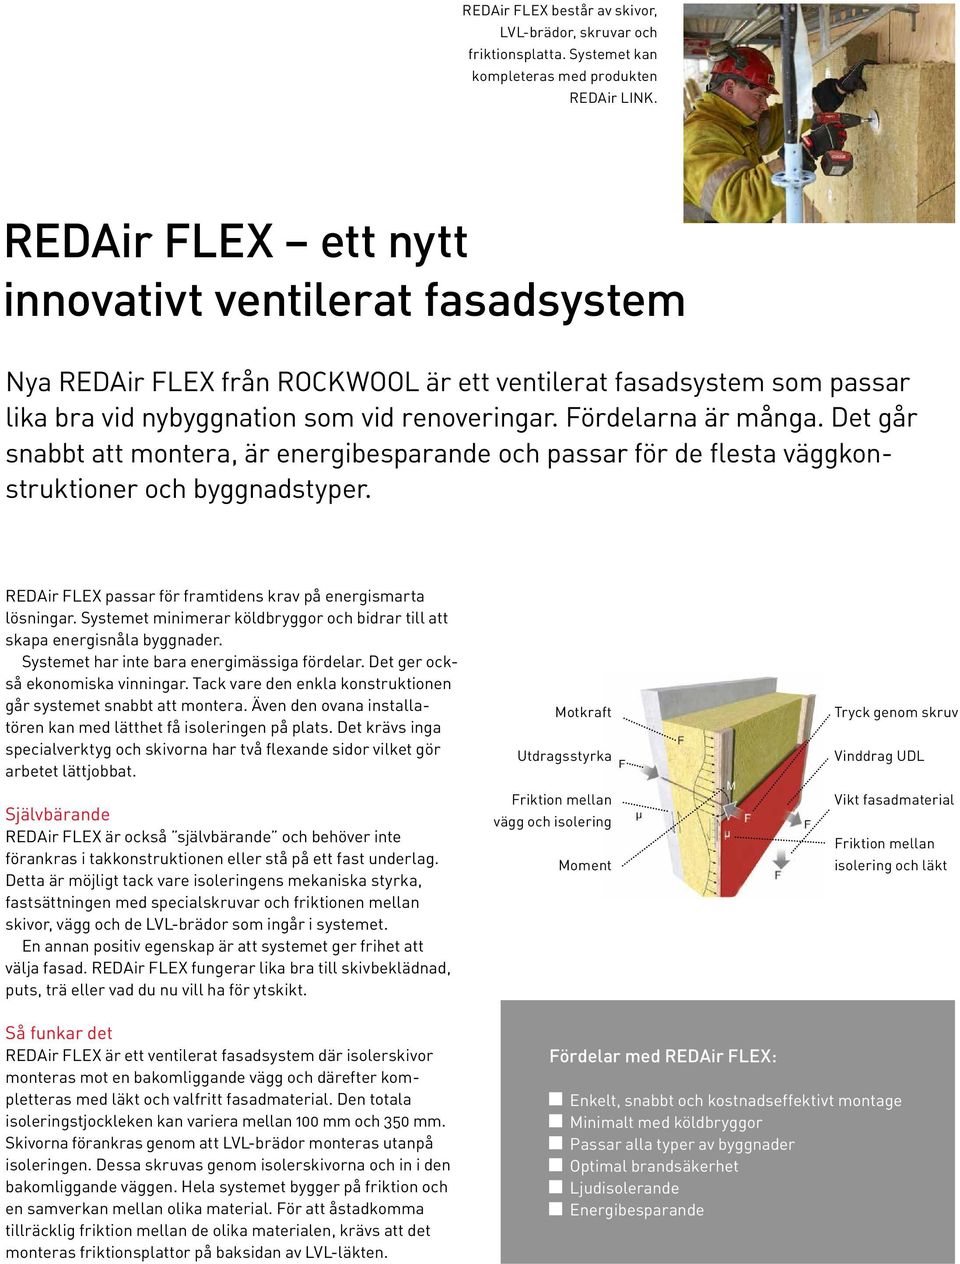 Det går snabbt att montera, är energibesparande och passar för de flesta väggkonstruktioner och byggnadstyper. REDAir FLEX passar för framtidens krav på energismarta lösningar.